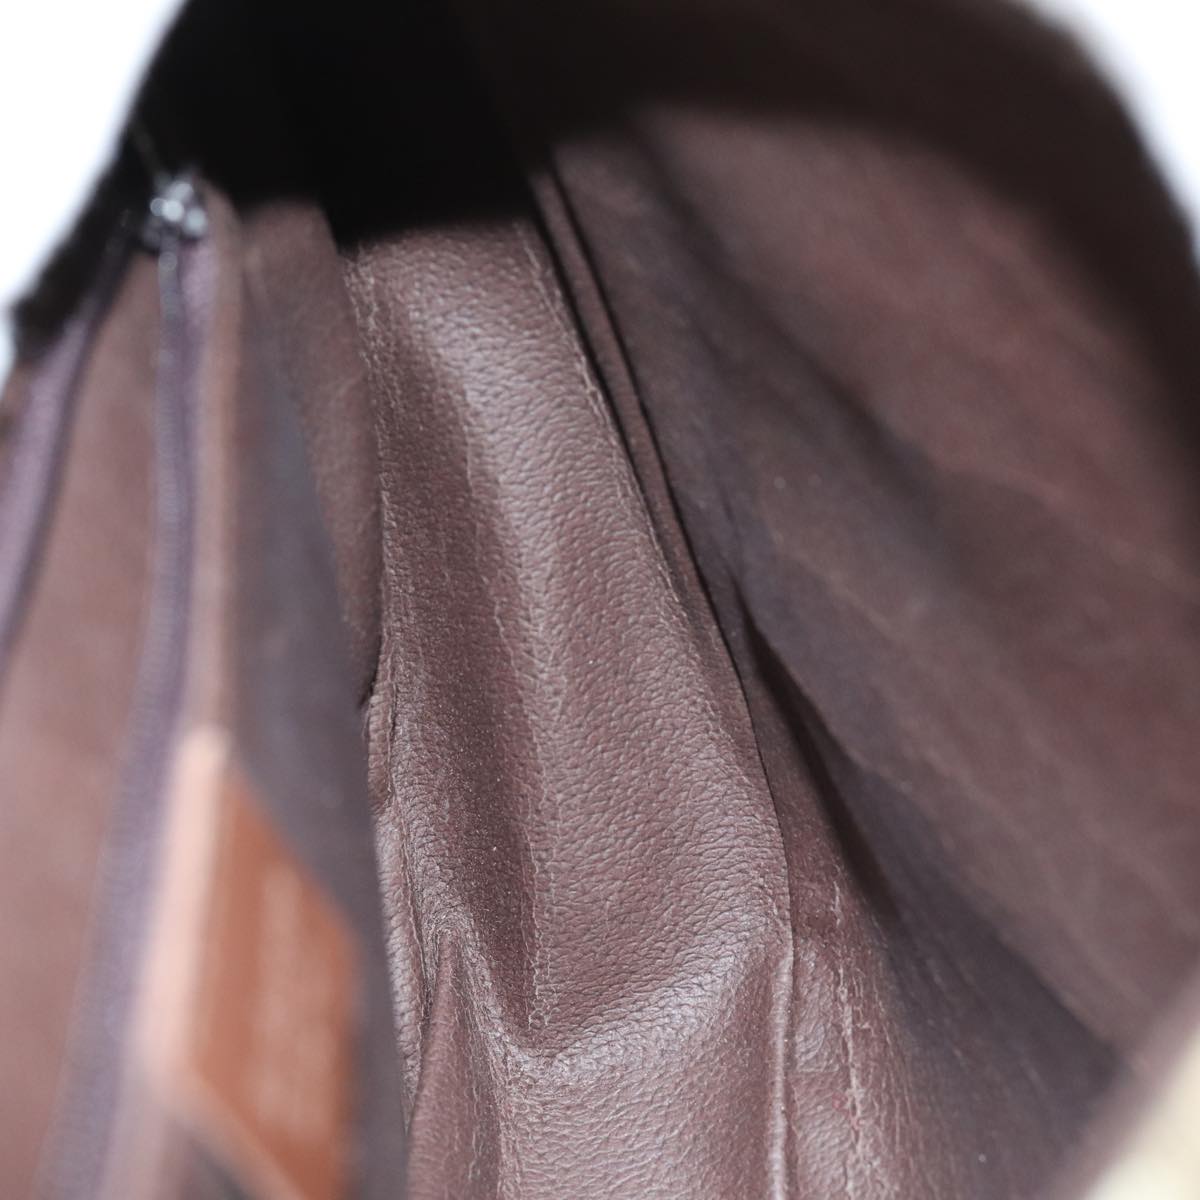 Burberrys Nova Check Shoulder Bag PVC Leather Beige Auth 74258